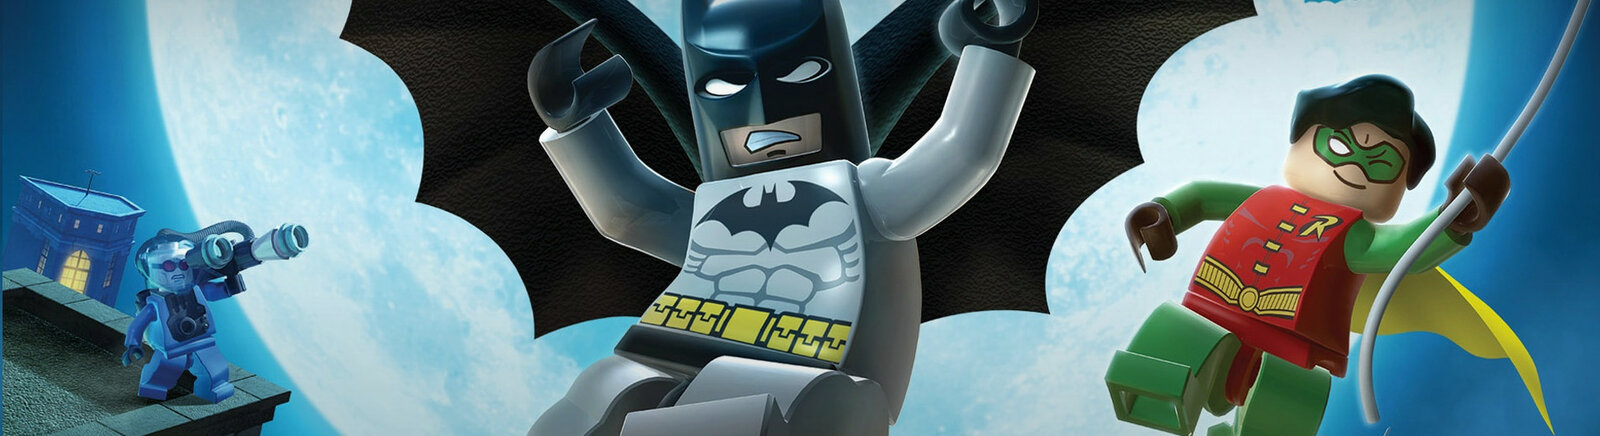 Дата выхода LEGO Batman: The Videogame (2009)  на PC, PS3 и PS2 в России и во всем мире